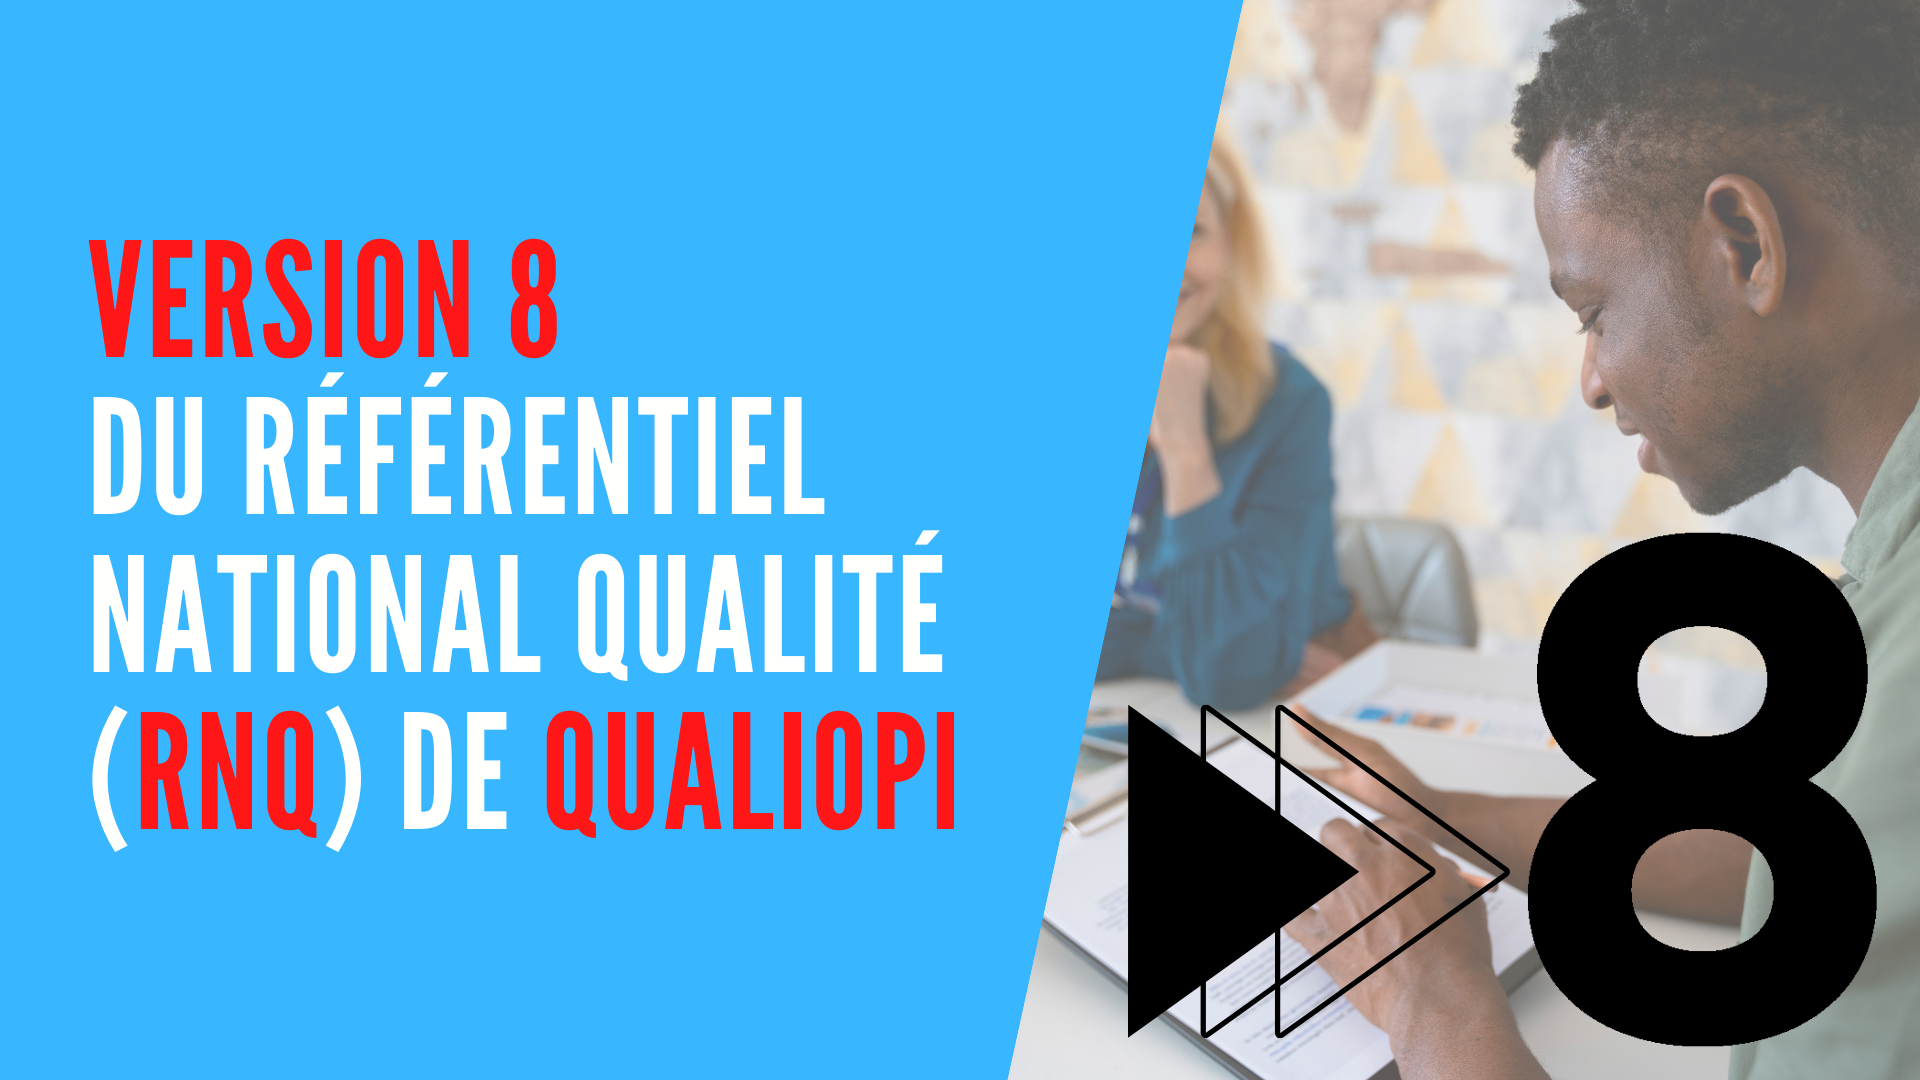 You are currently viewing Version 8 du Référentiel National Qualité (RNQ) Qualiopi